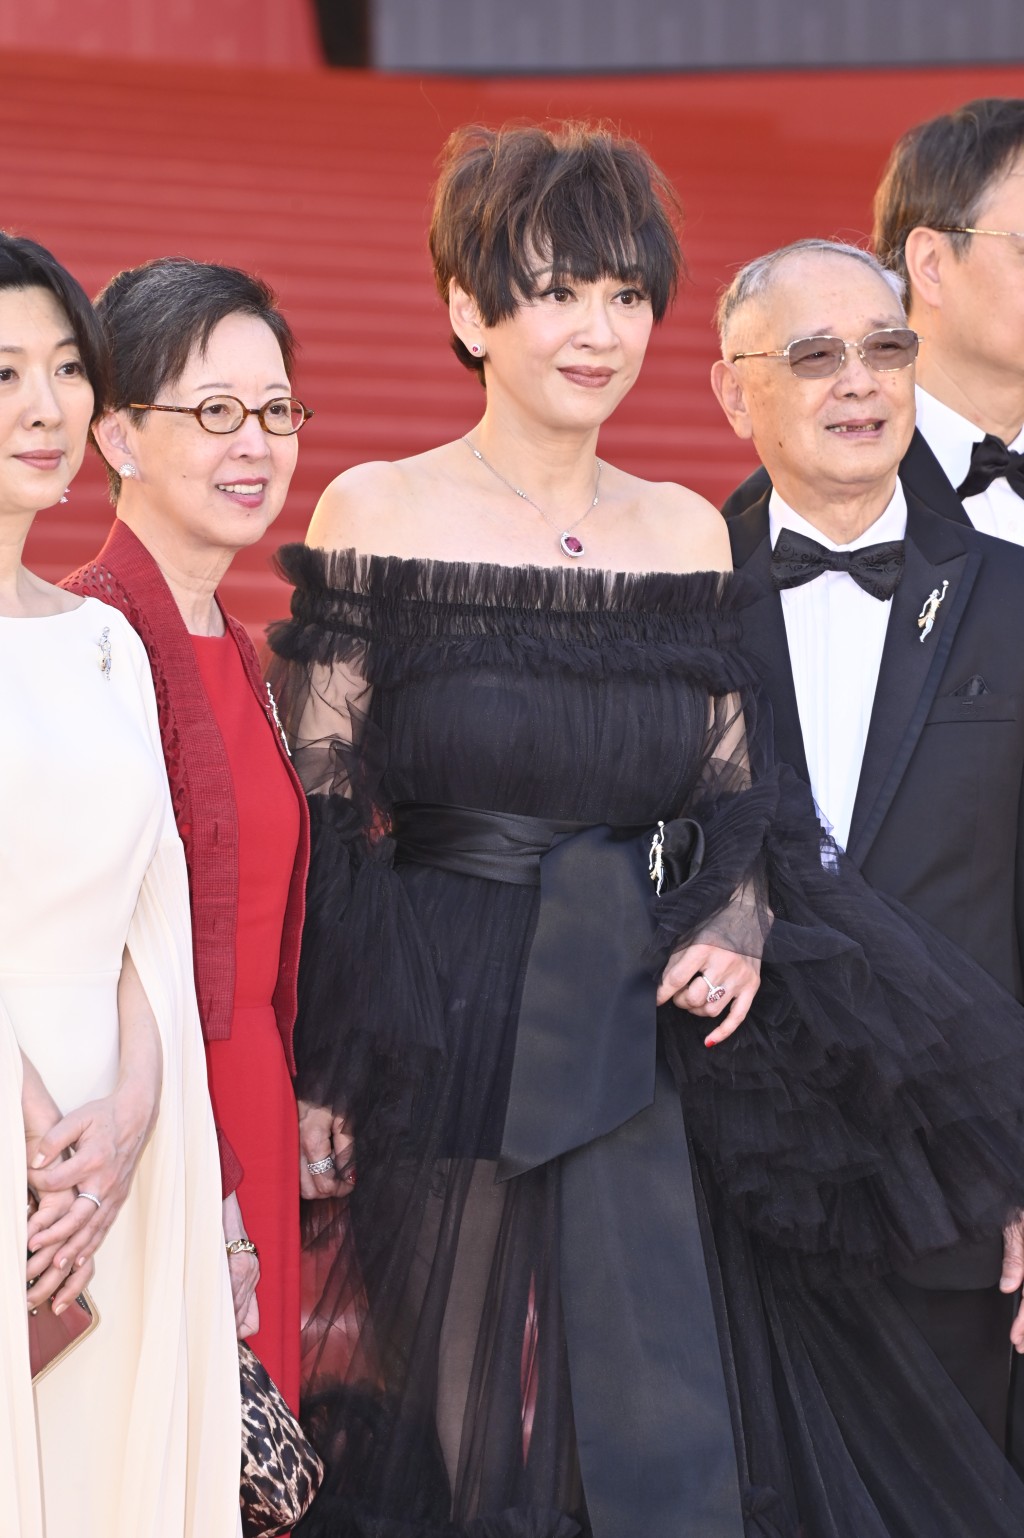 金像獎董事局成員余安安露香肩、穿薄紗黑裙顯高貴氣質。